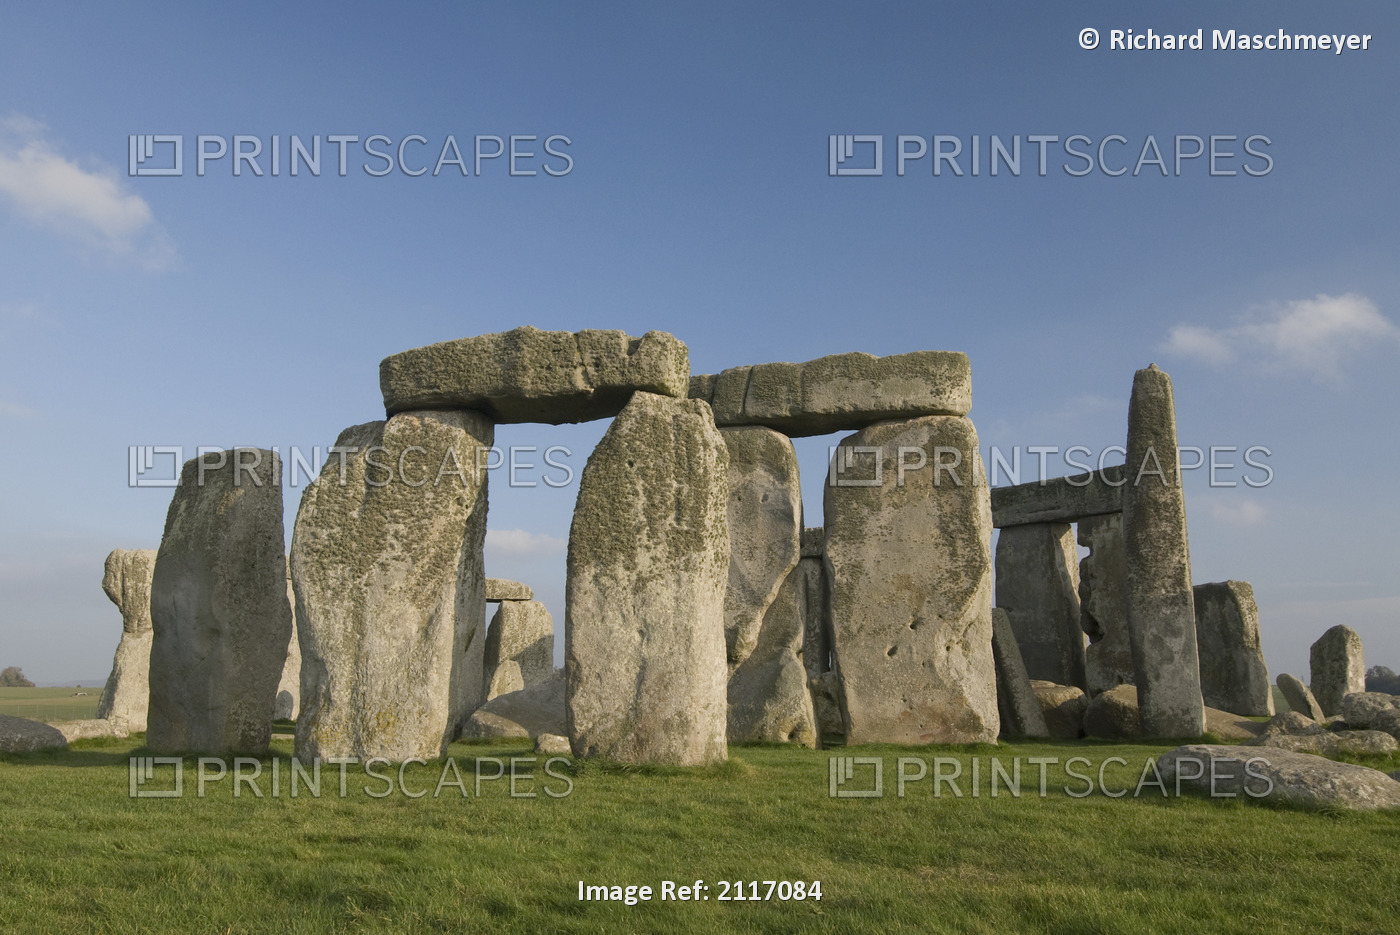 United Kingdom, England, The infamous Stonehenge structures.